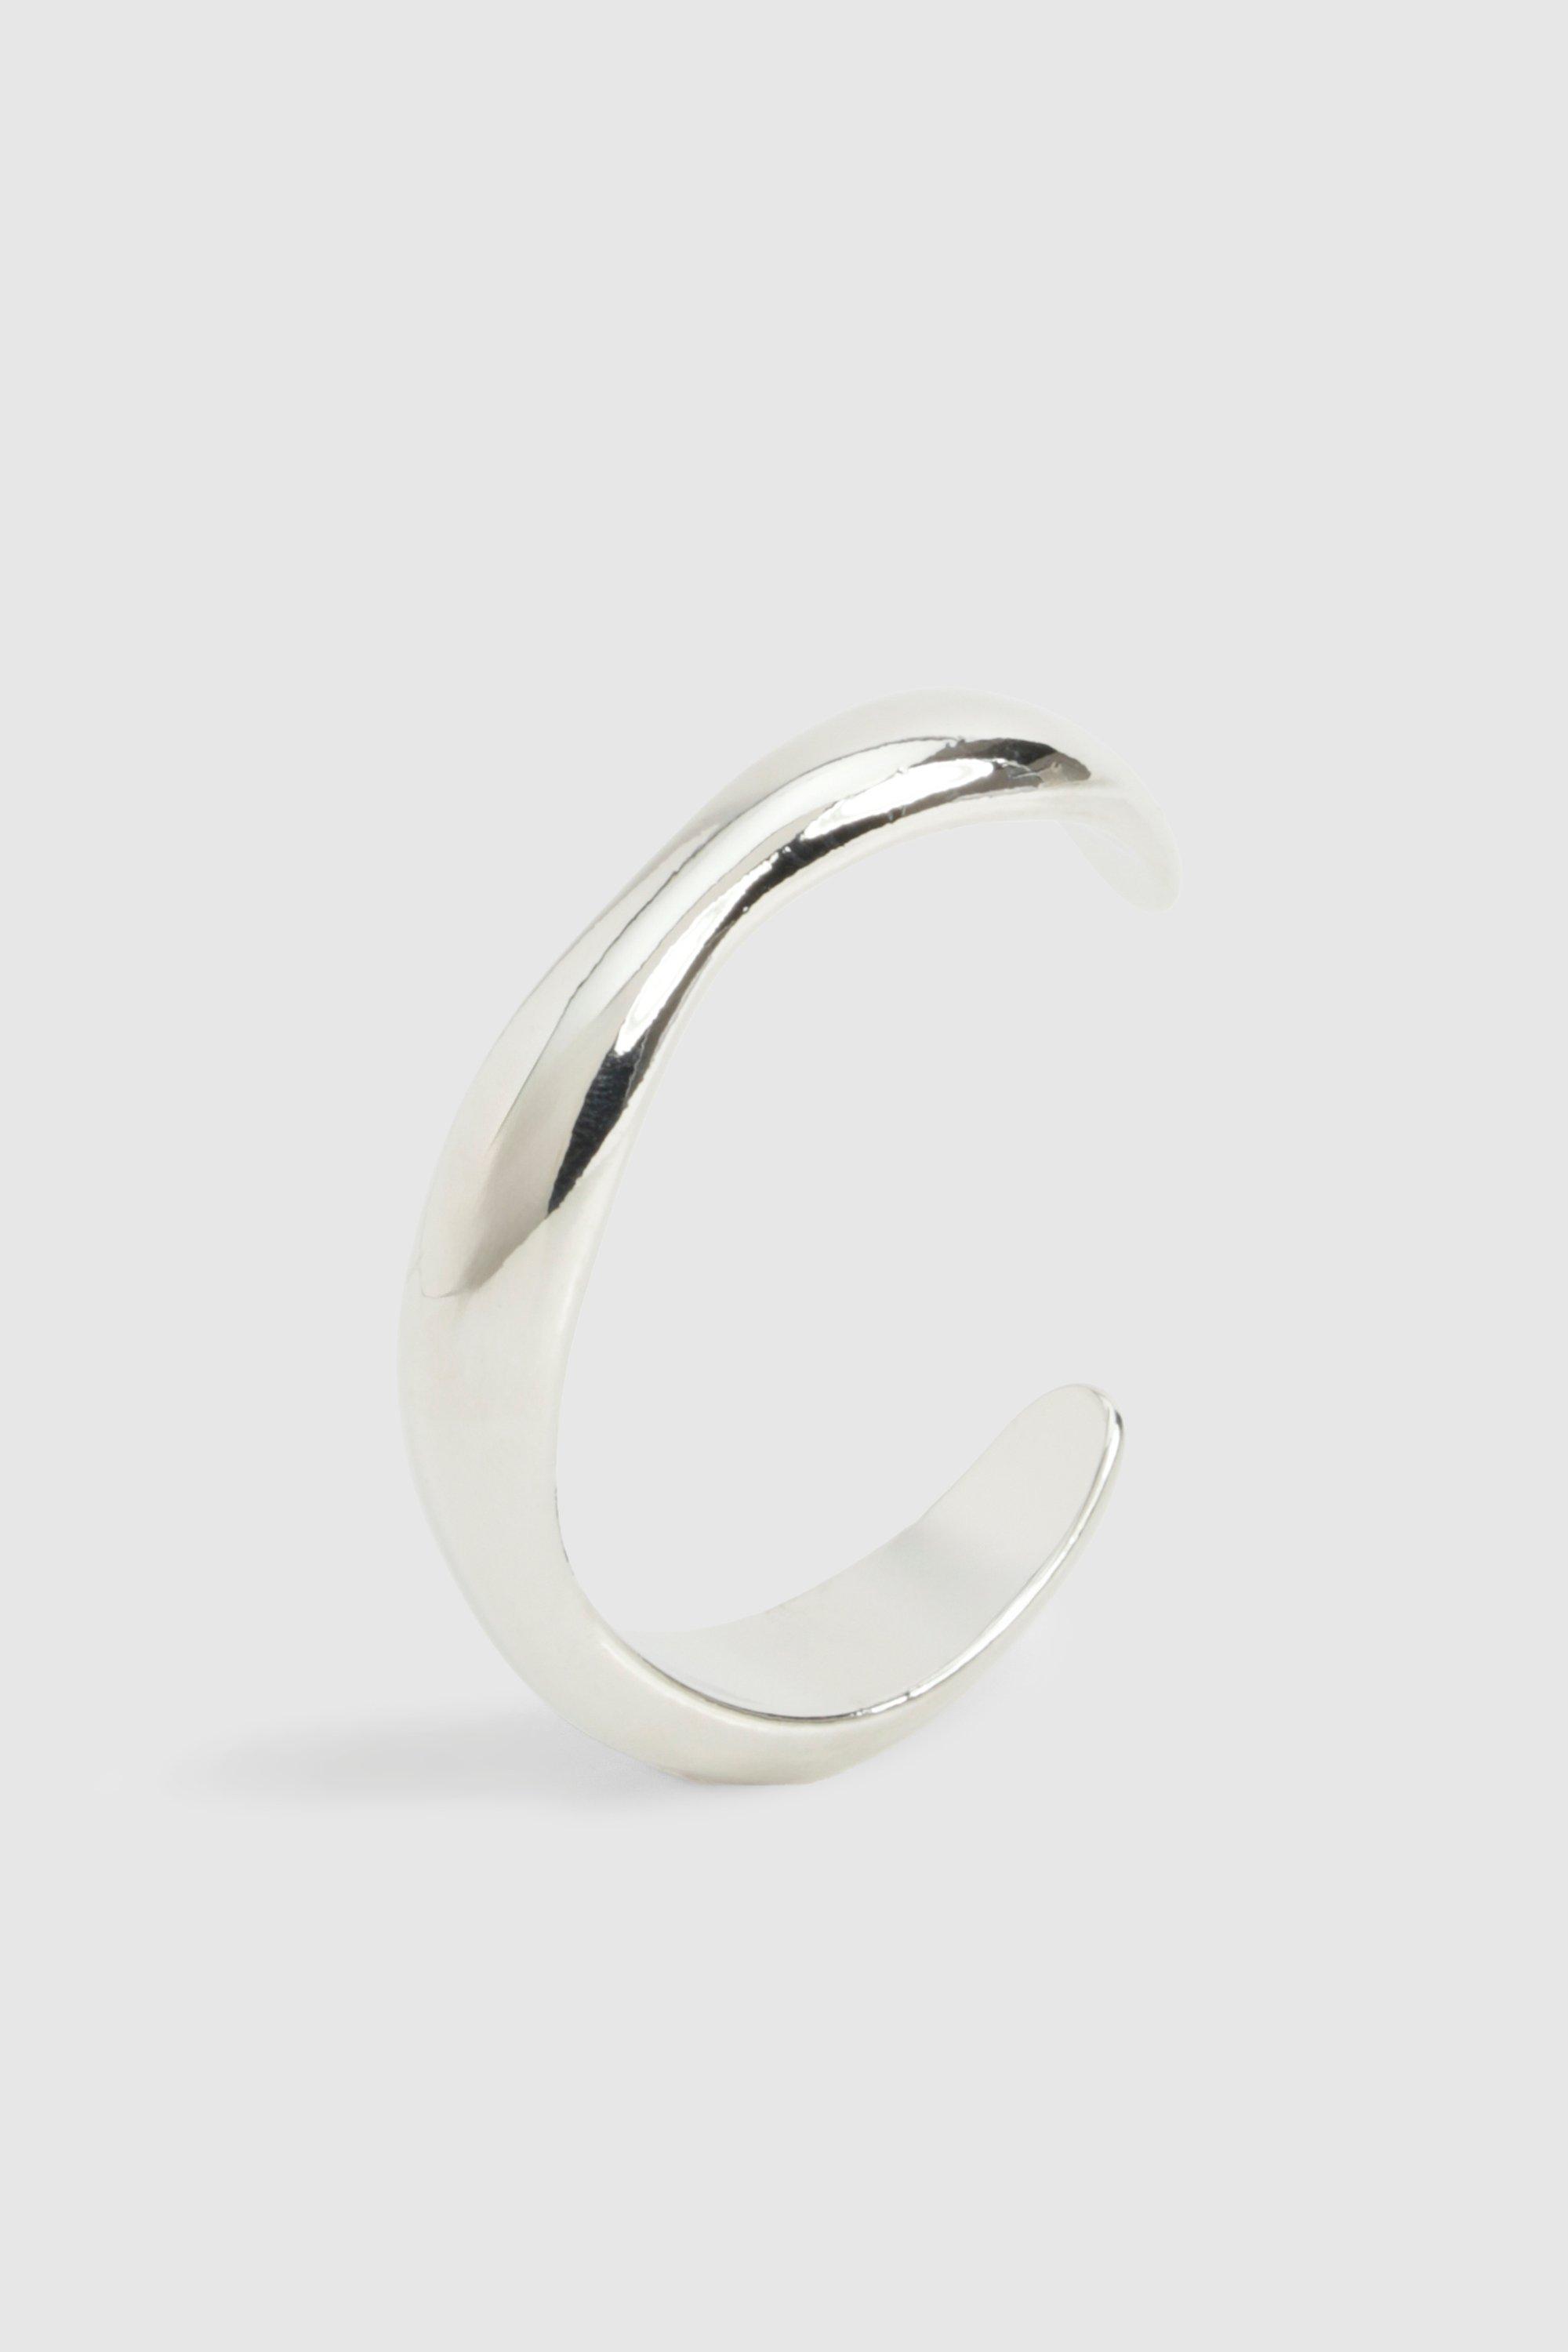 Image of Silver Asymmetric Wavy Cuff Bracelet, Grigio